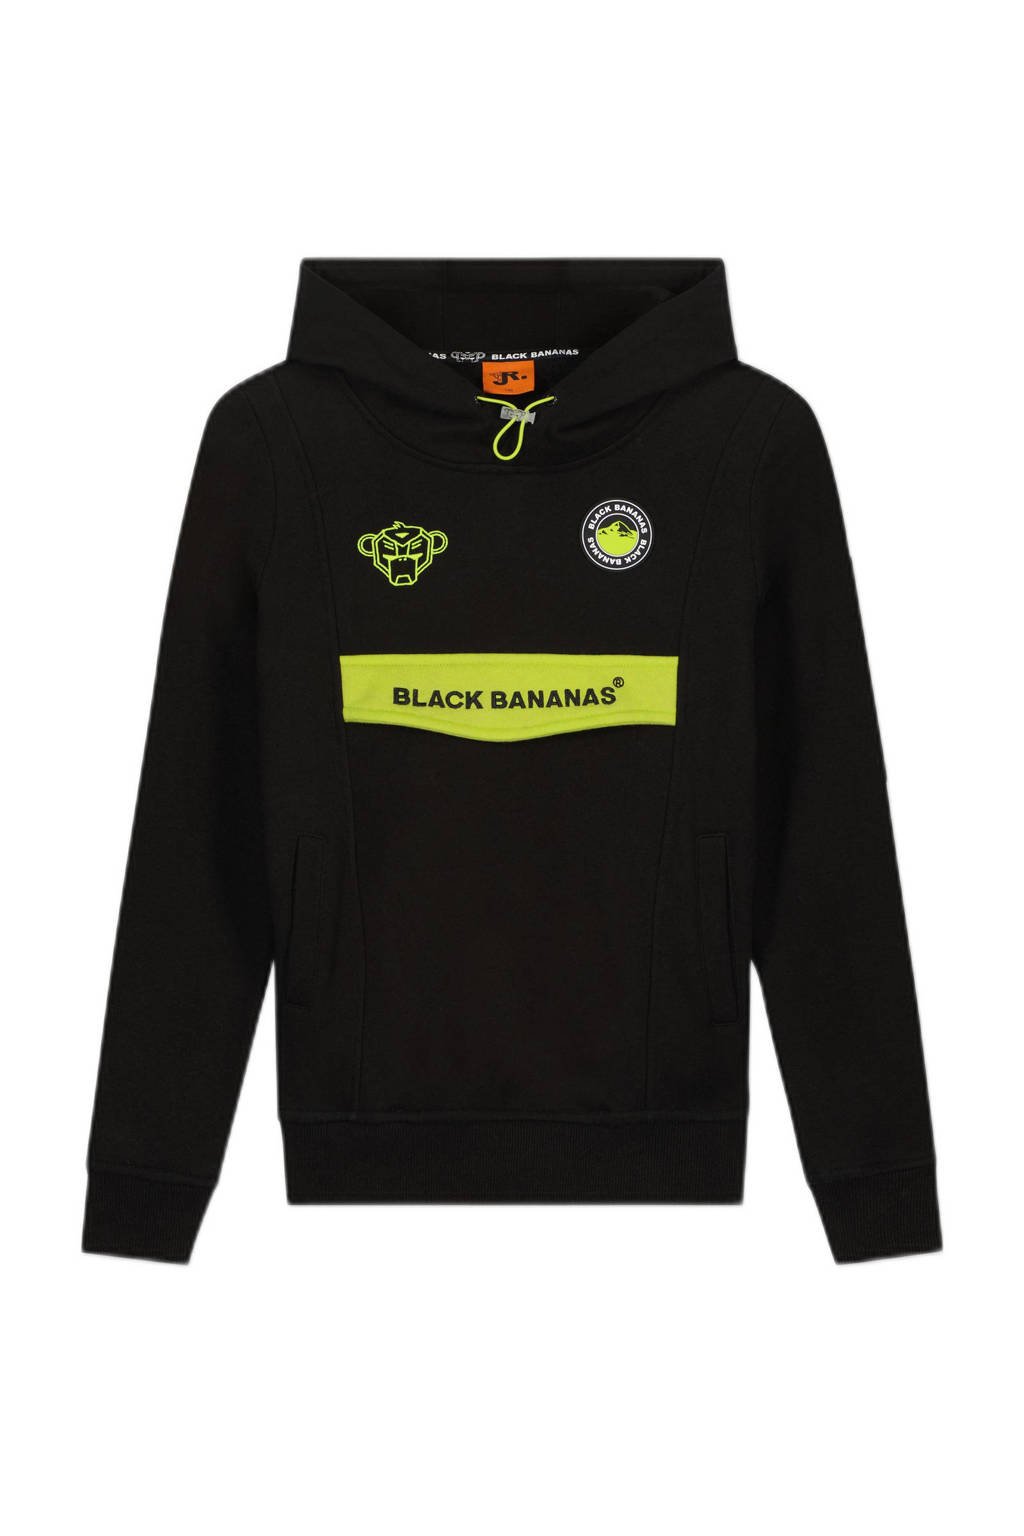 Zwart en gele jongens en meisjes BLACK BANANAS unisex hoodie van sweat materiaal met logo dessin, lange mouwen en capuchon